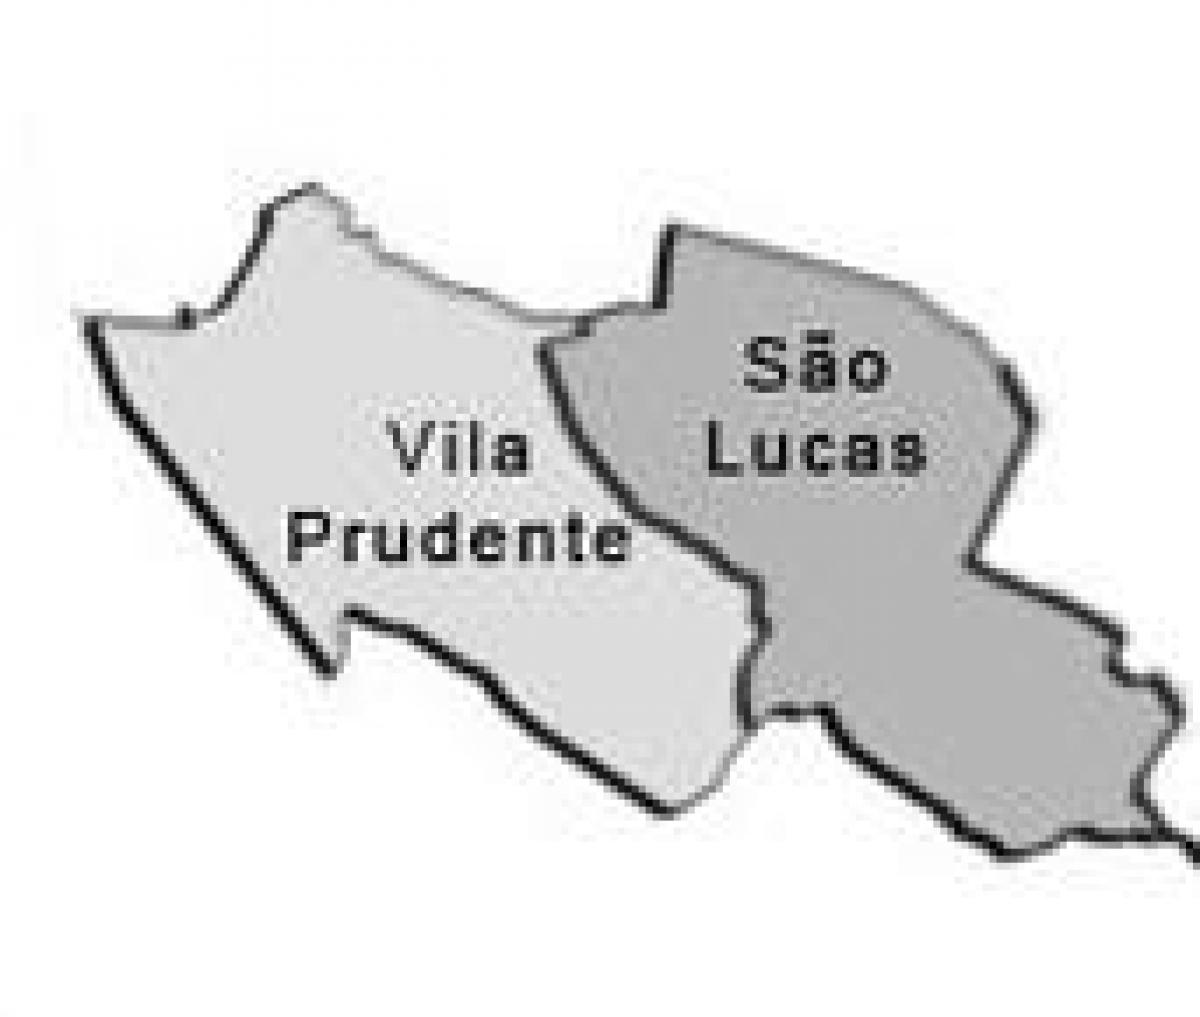 Zemljevid Vila Prudente sub-prefekturi